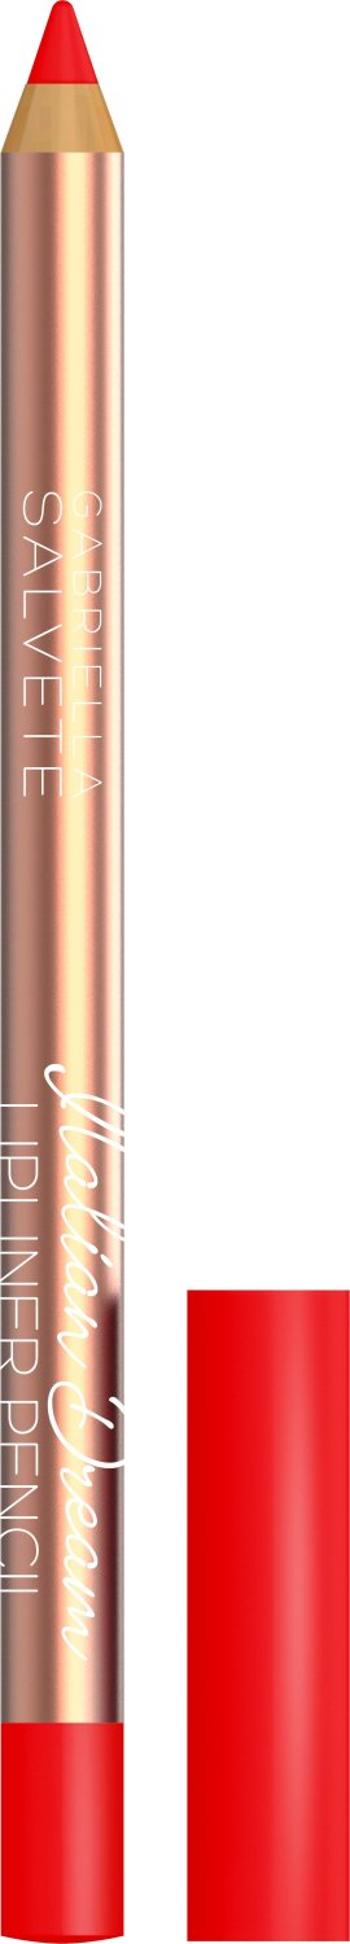 Gabriella Salvete Italian Dream Konturovací tužka na rty - odstín 05, 0.25 g